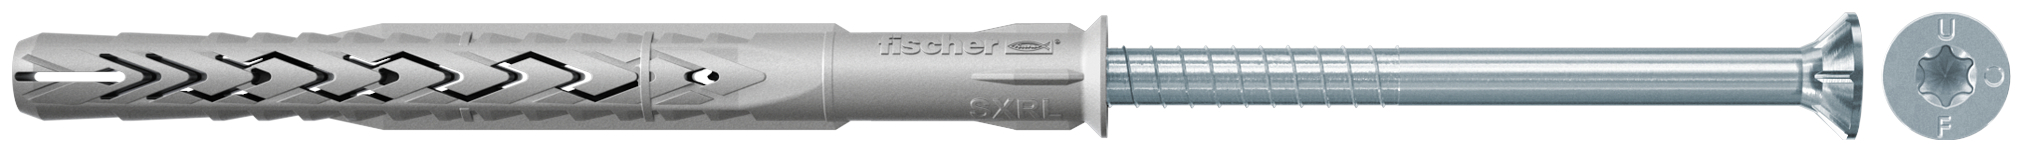 fischer Tasselli prolungati SXRL 8x60 T (1 Pz.) Tassello prolungato in nylon con marcatura CE con vite premontata T.S.P. impronta torx fie3157